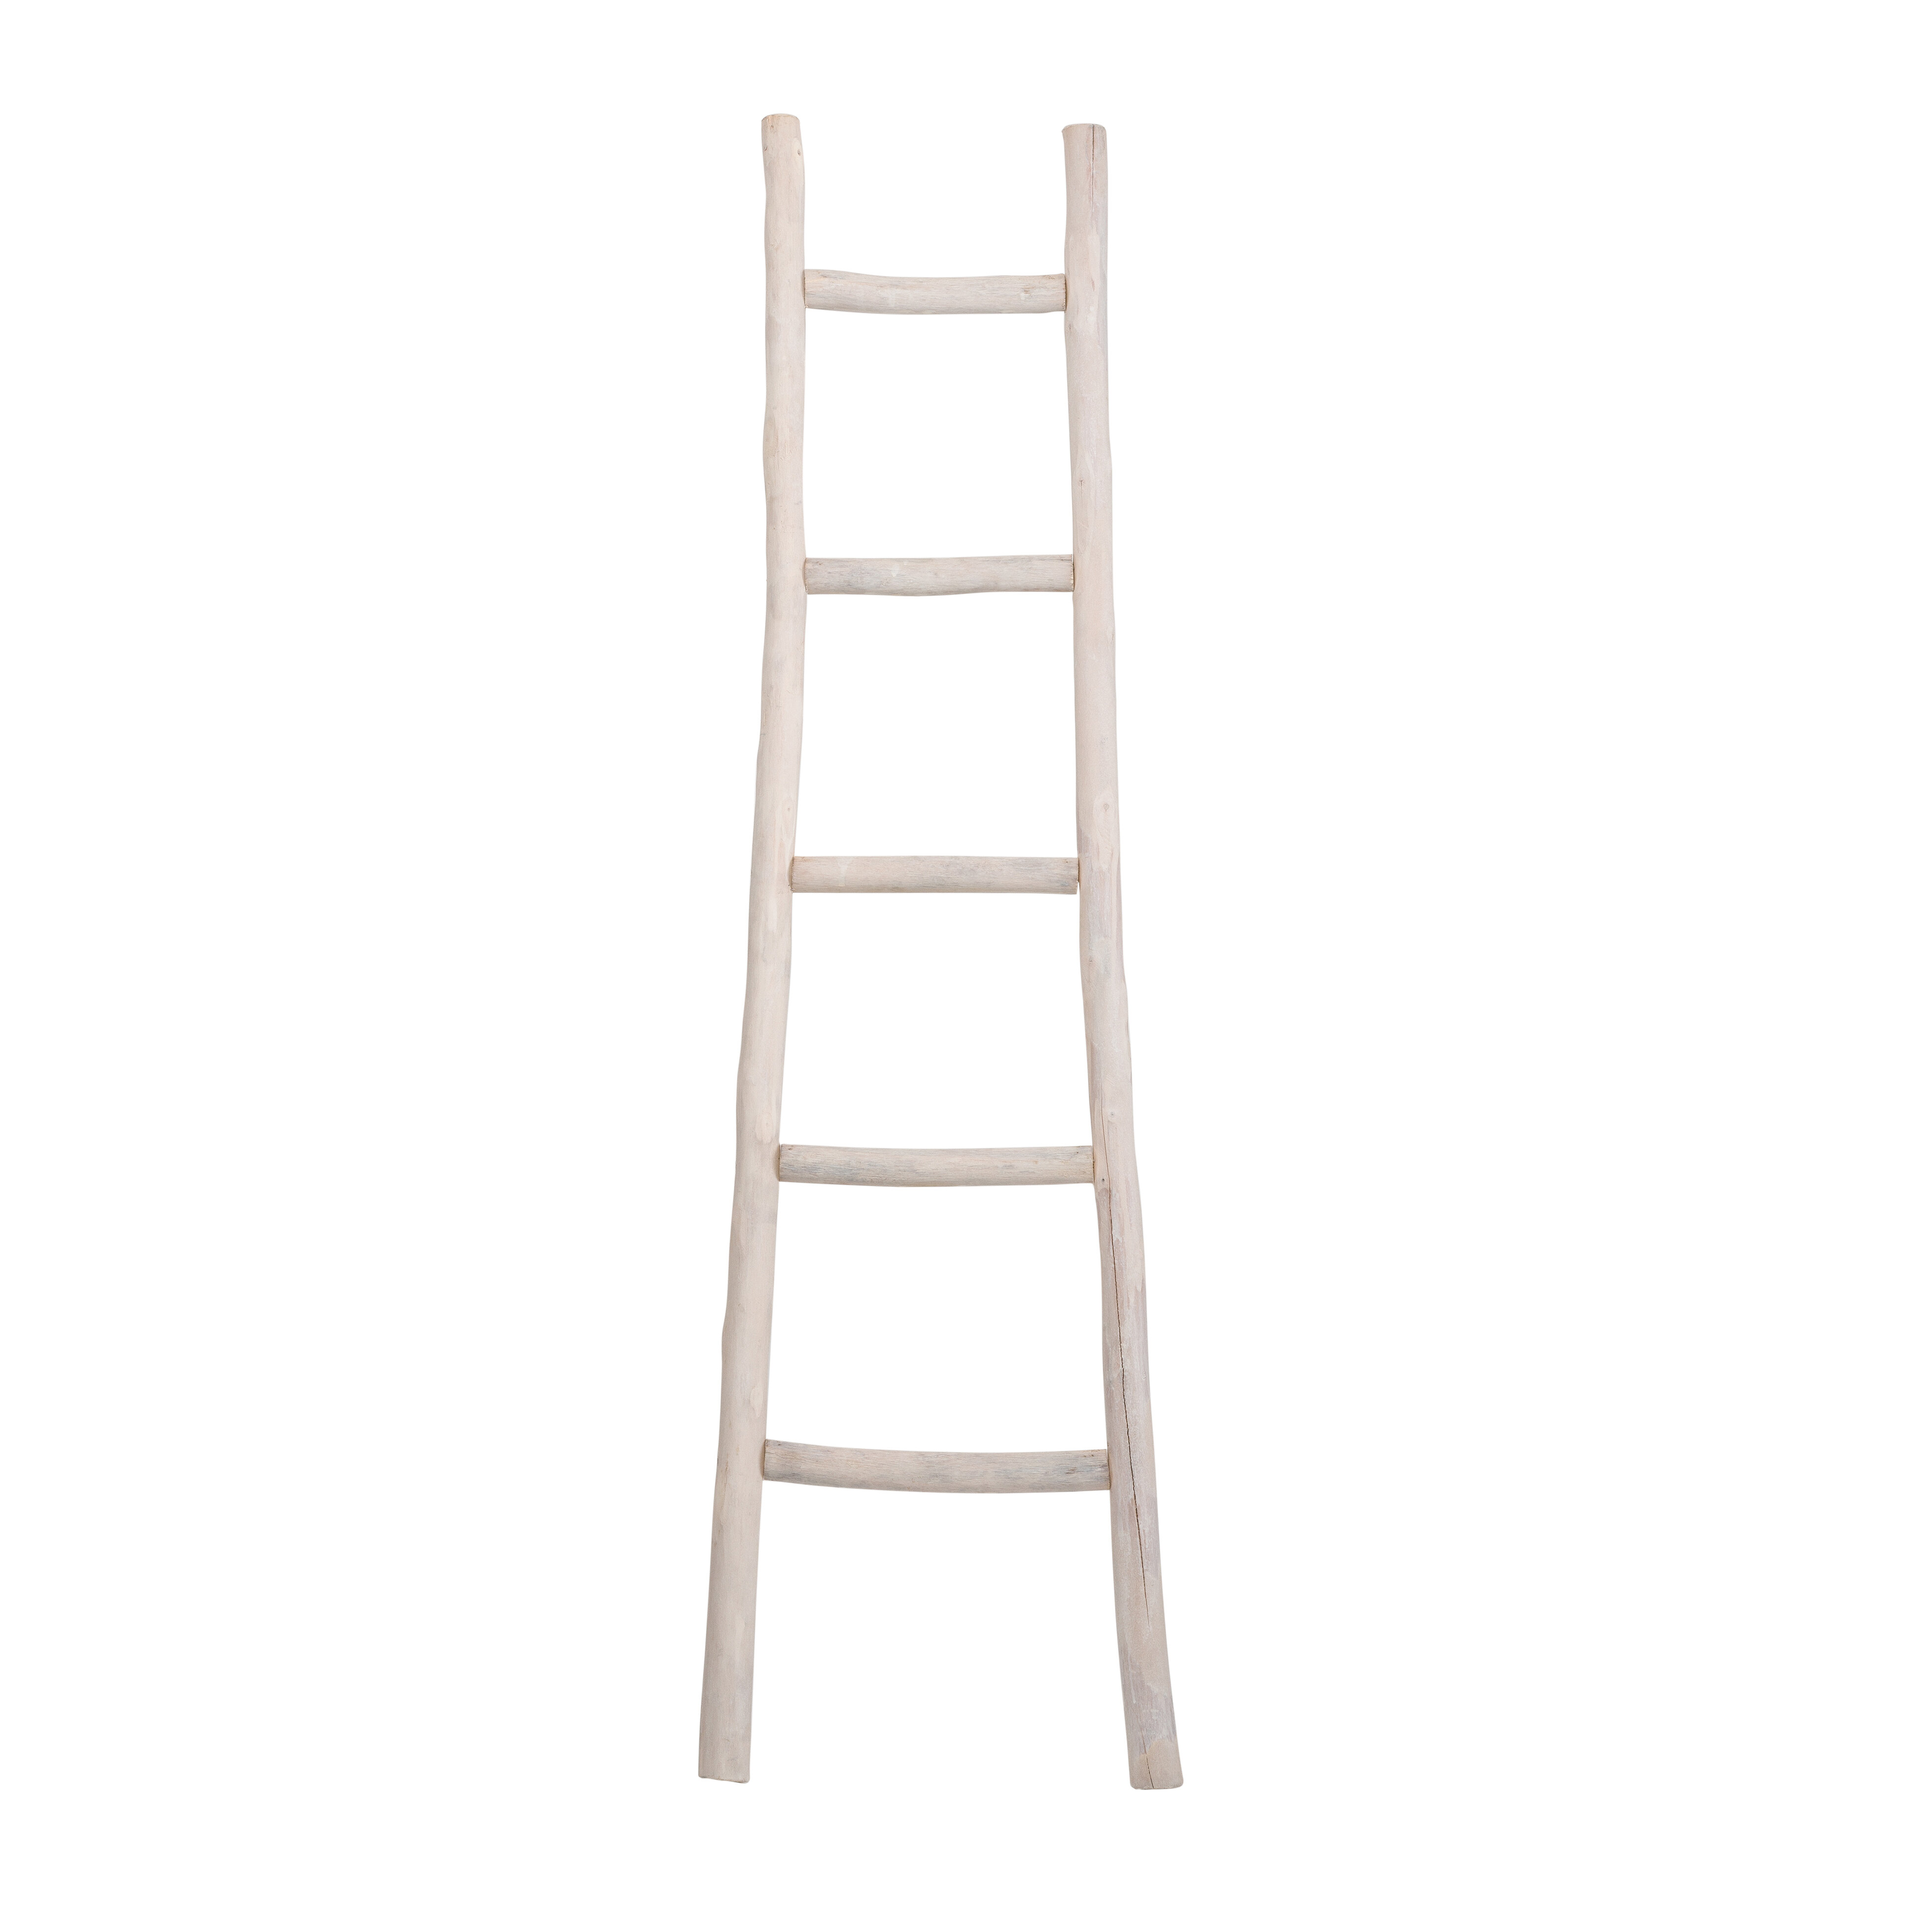 Blanket Ladder Wood Bars Rungs Step Towel Rack Storage Display Rustic White 